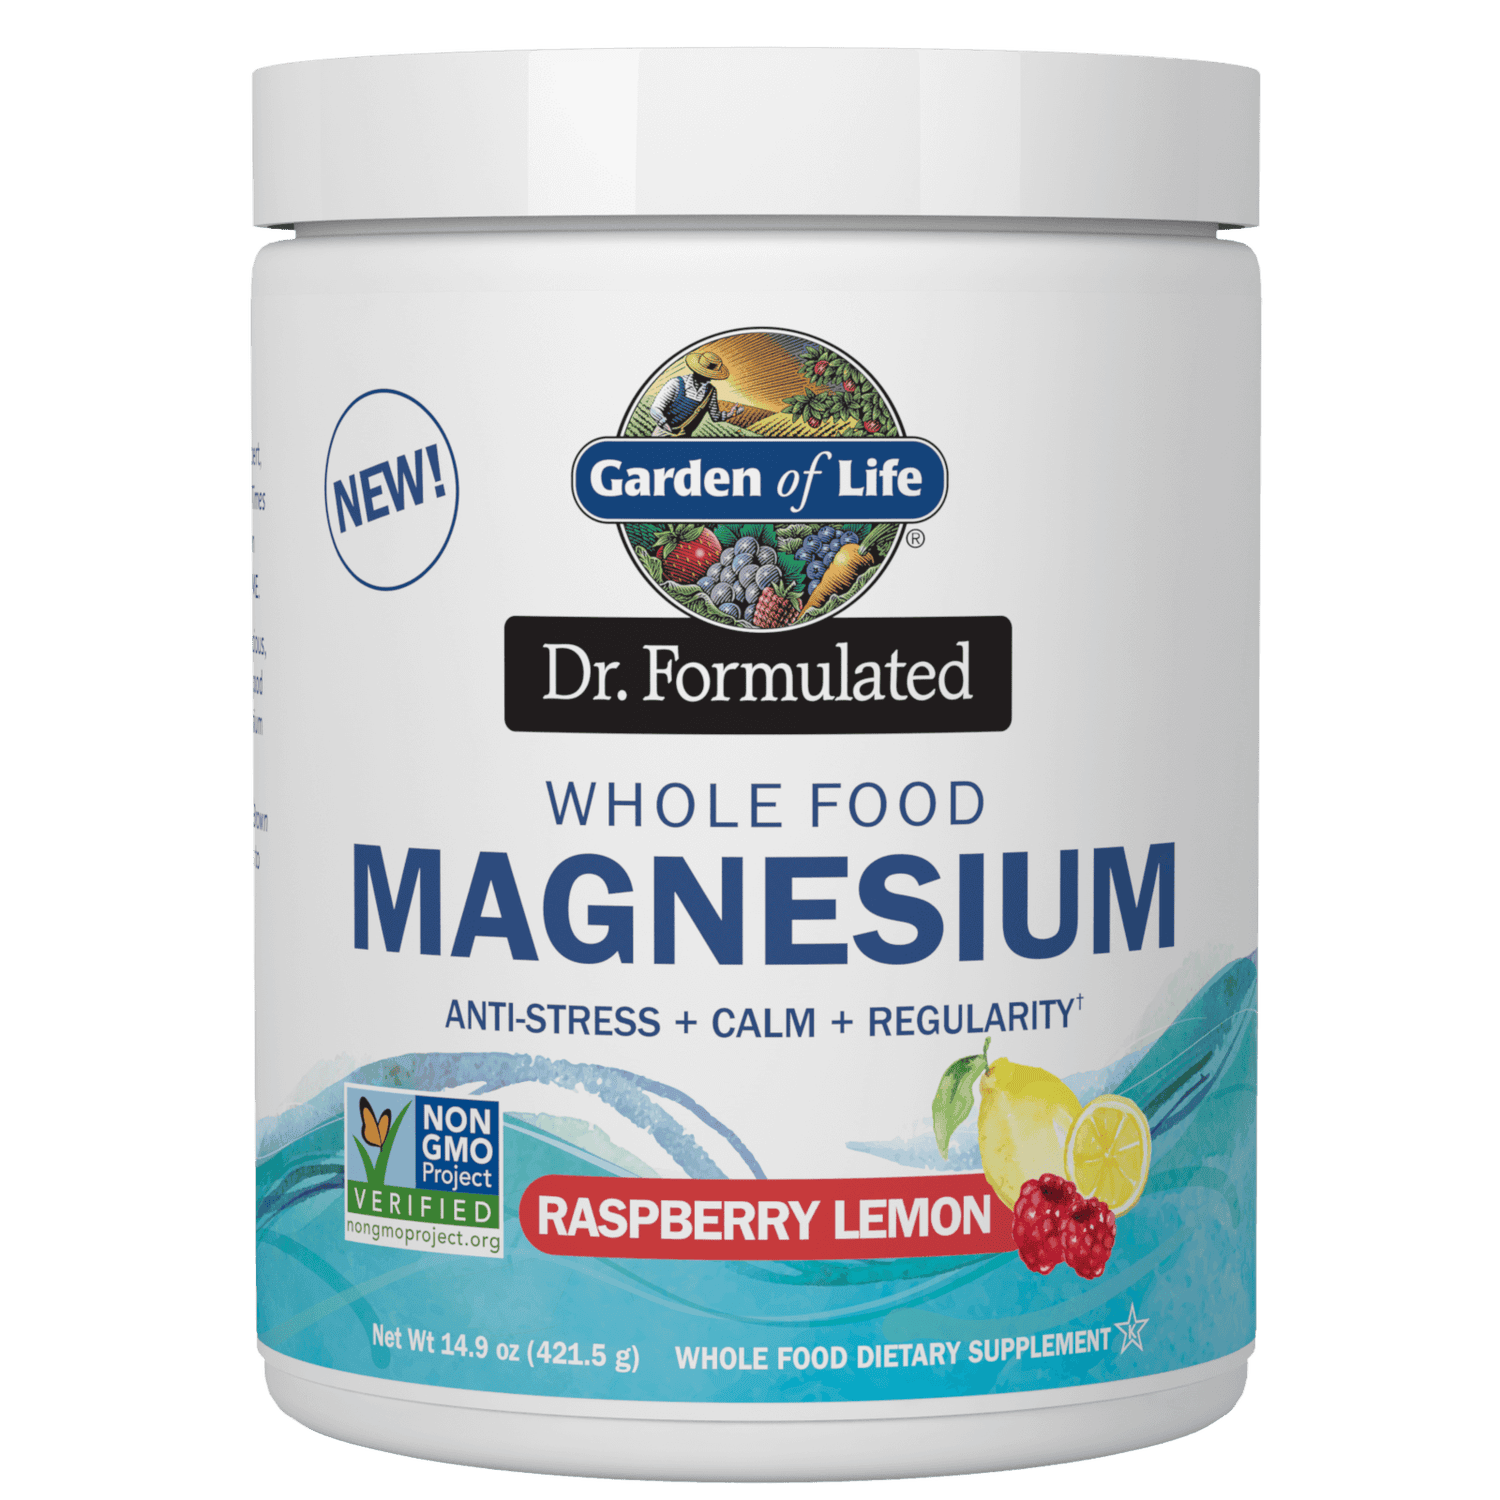 Whole Food Magnesium - Raspberry Lemon - 421.5g